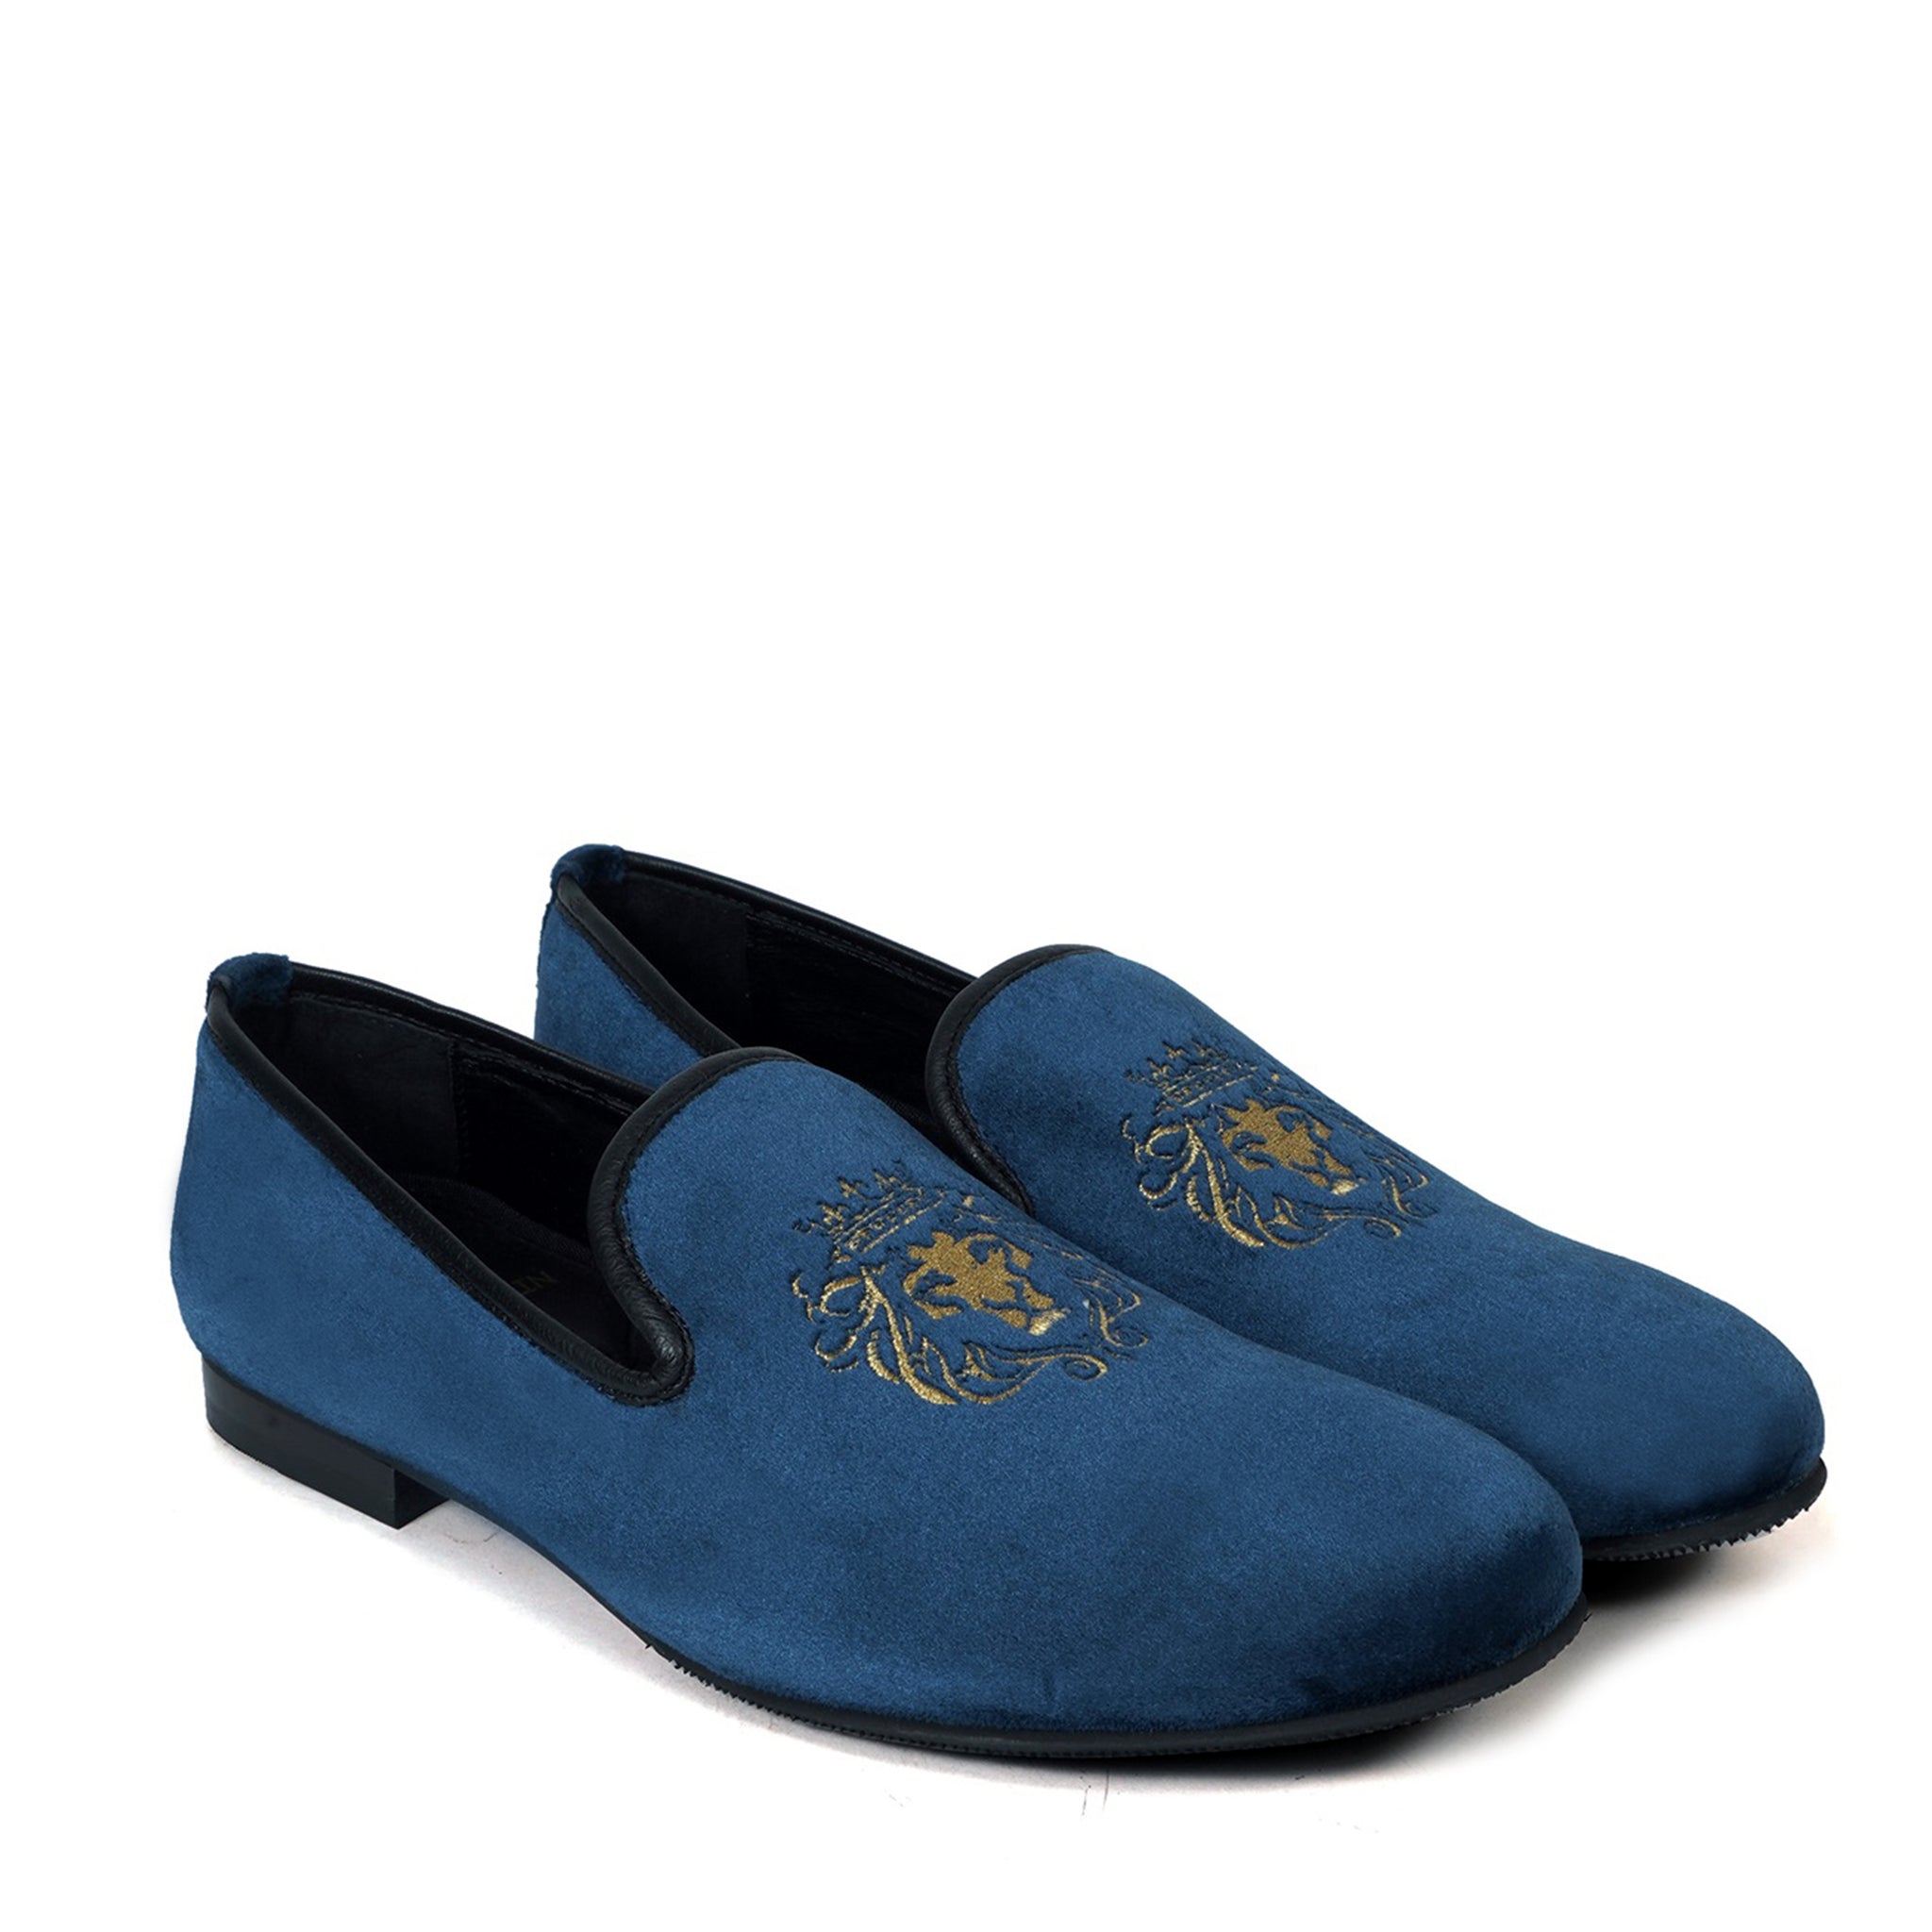 Blue Velvet/Golden Lion King Embroidery Slip-On Shoes By Brune & Bareskin